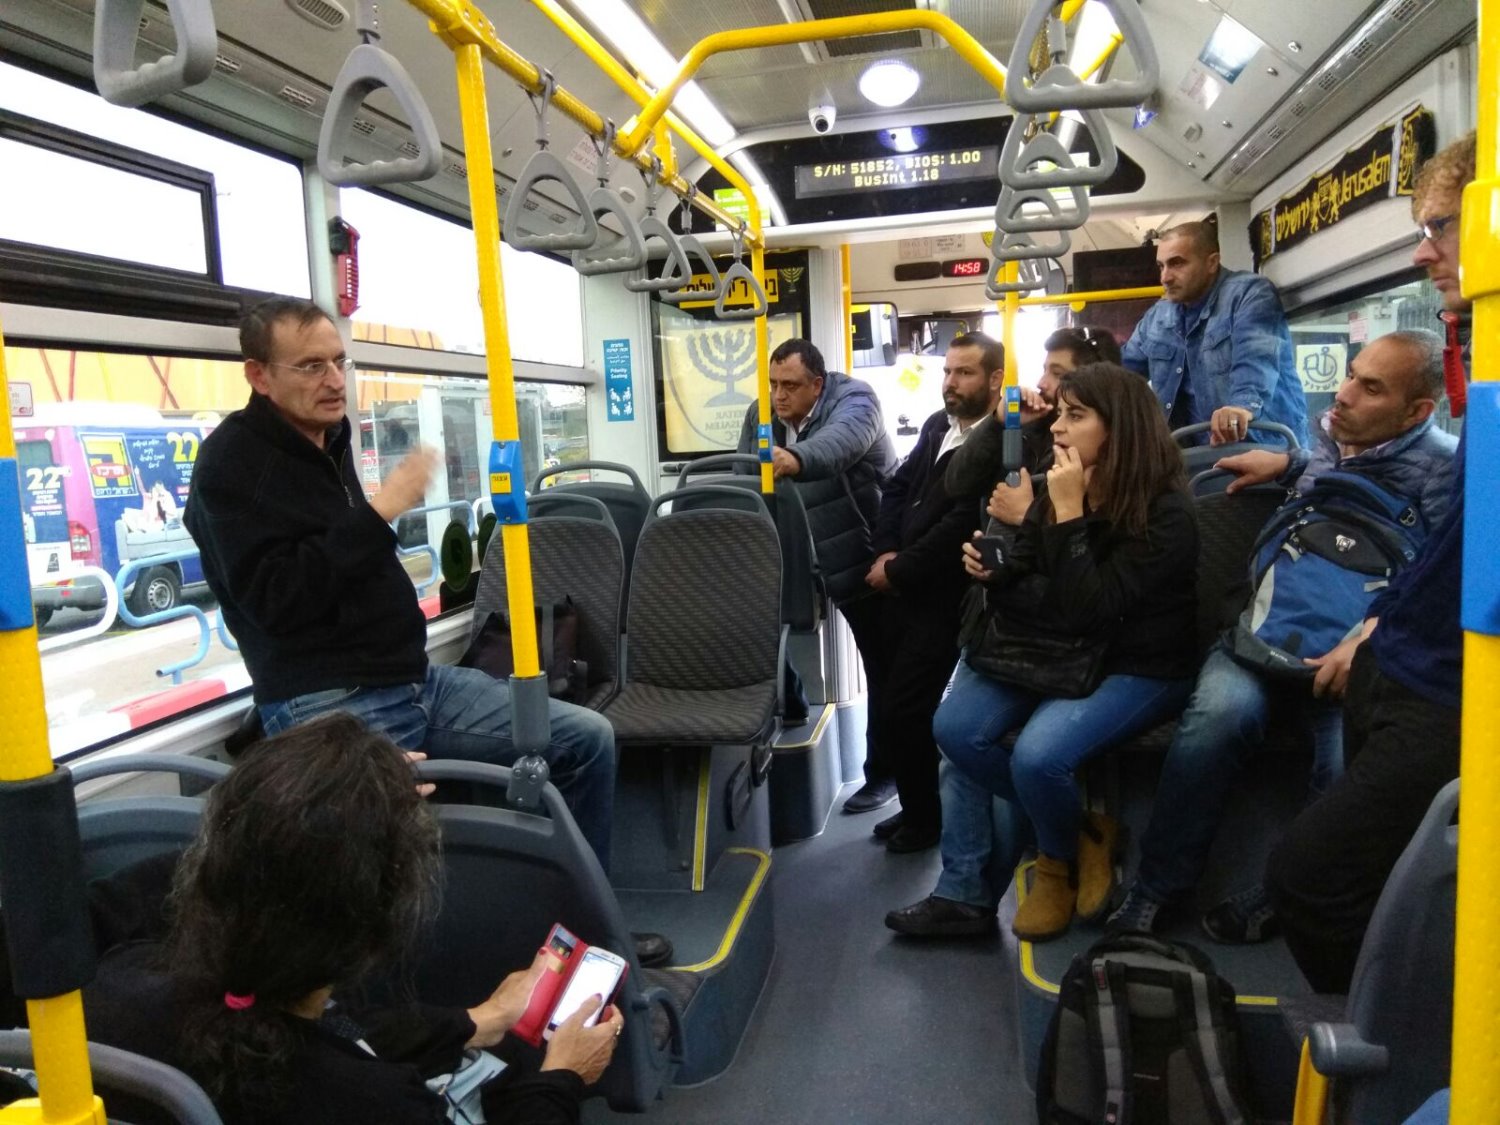 ח"כ דב חנין באוטובוס ציבורי של אפיקים באשדוד